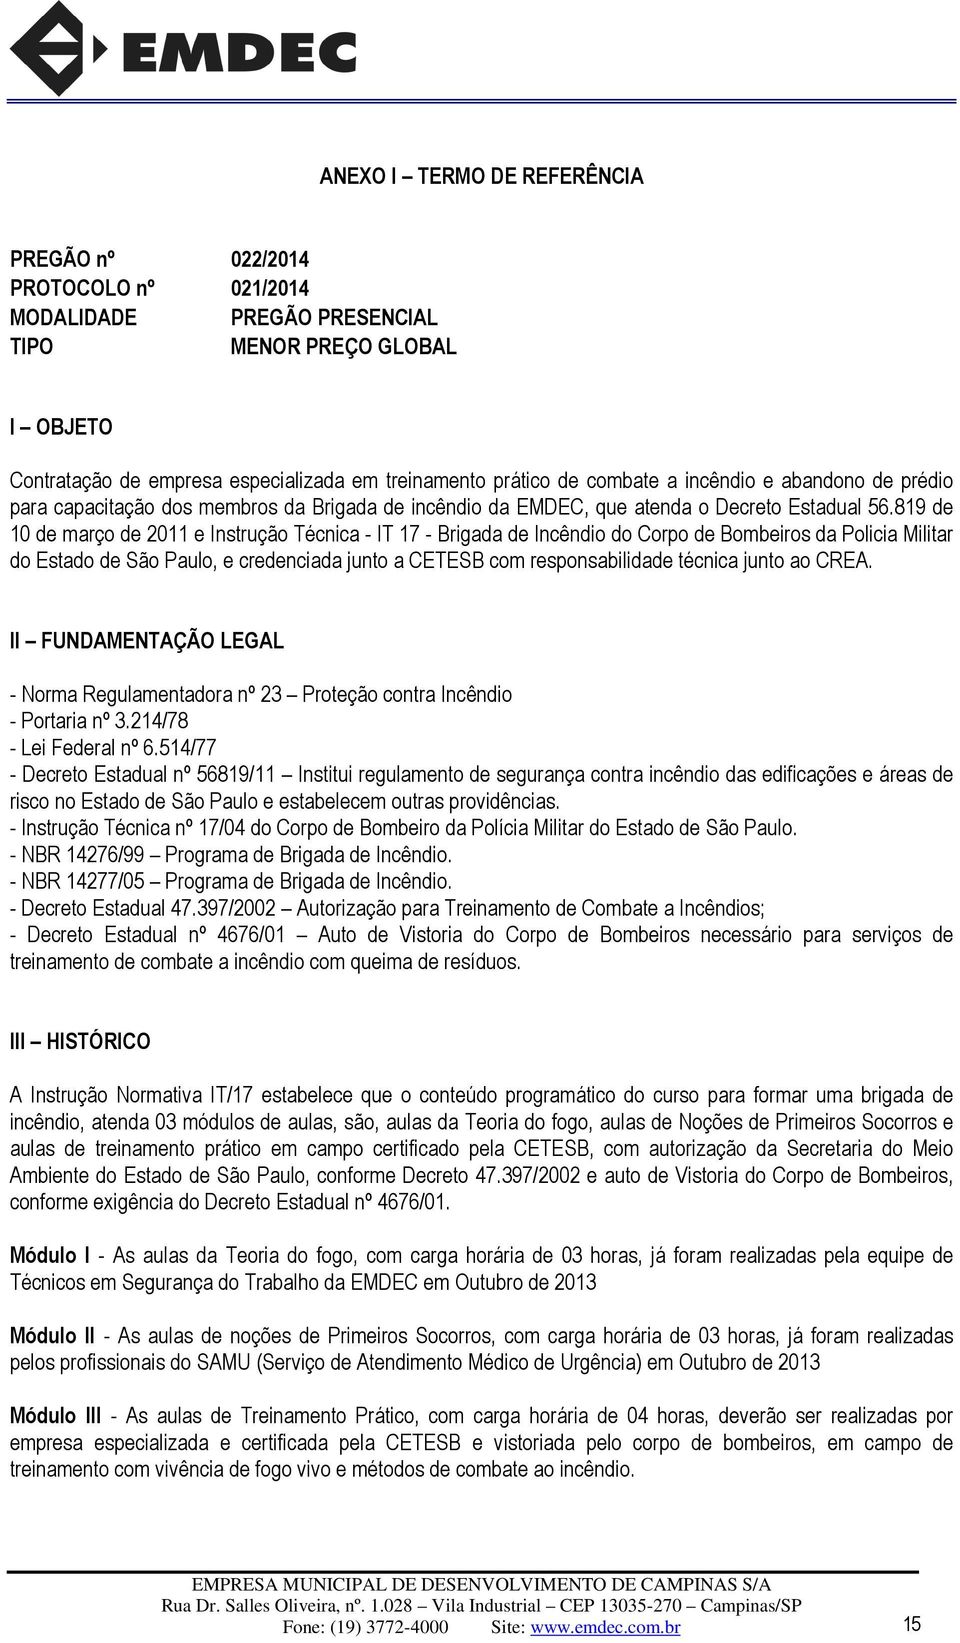 819 de 10 de março de 2011 e Instrução Técnica - IT 17 - Brigada de Incêndio do Corpo de Bombeiros da Policia Militar do Estado de São Paulo, e credenciada junto a CETESB com responsabilidade técnica